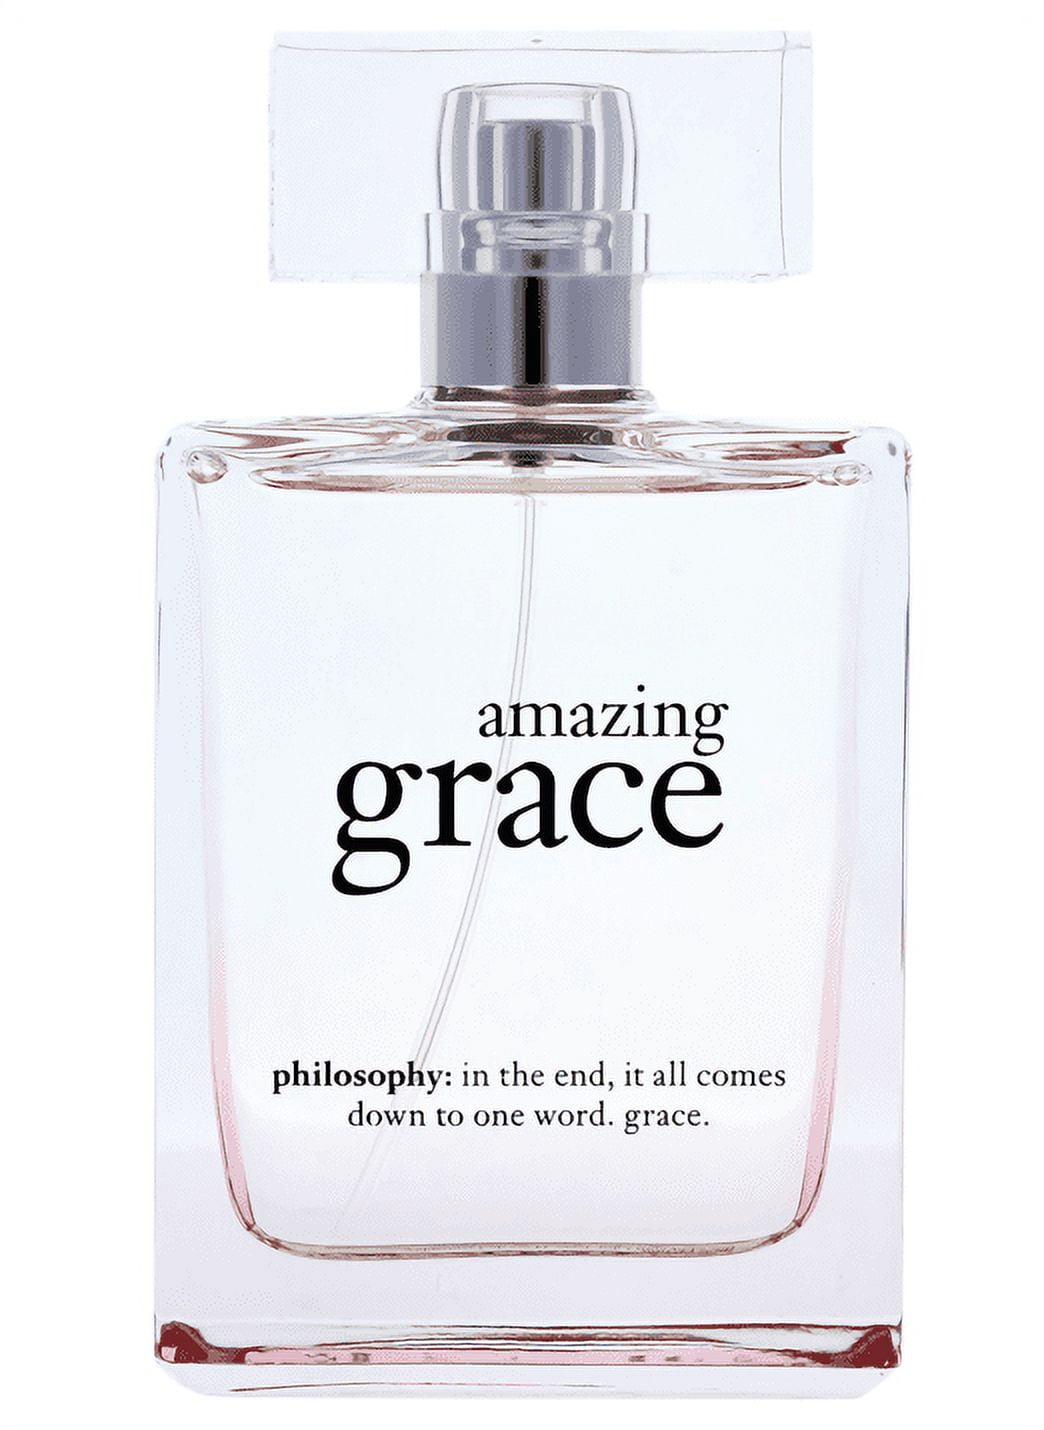 Philosophy - Pure Grace Eau de Parfum 2 oz. - Beauty Bridge